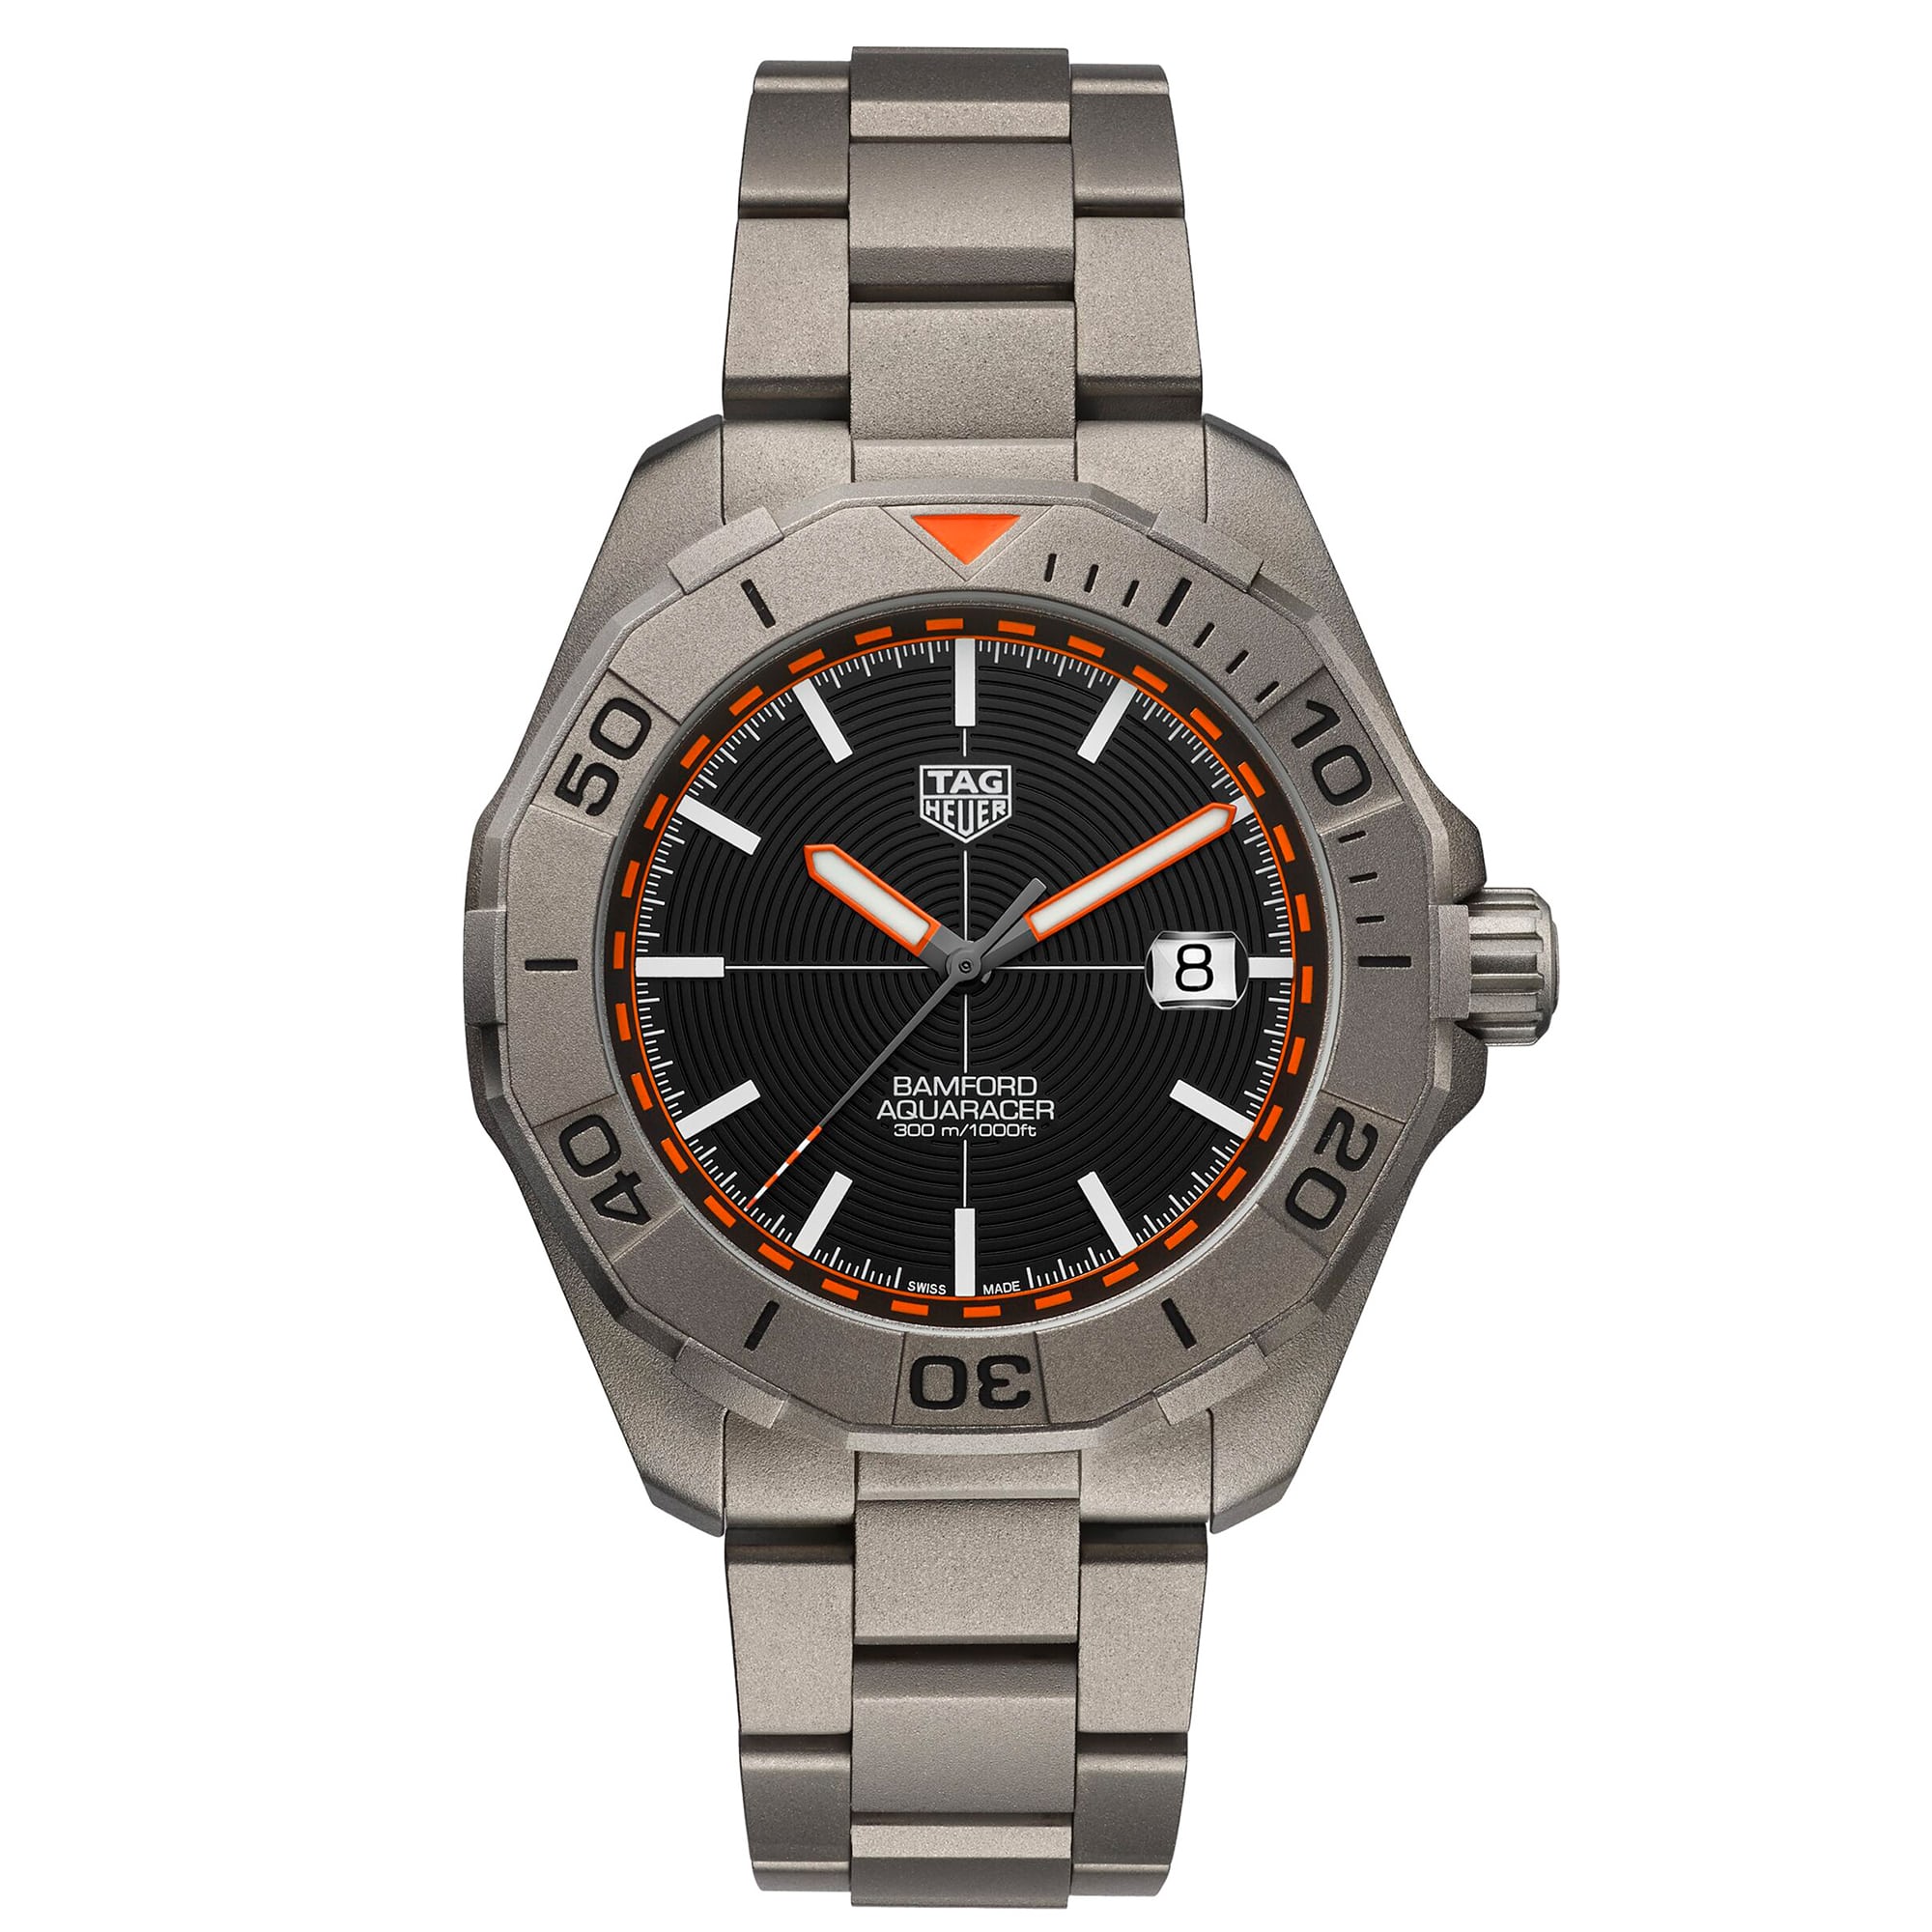 Chiếc đồng hồ TAG Heuer Aquaracer Bamford Limited Edition đặc biệt. Ảnh: Hodinkee